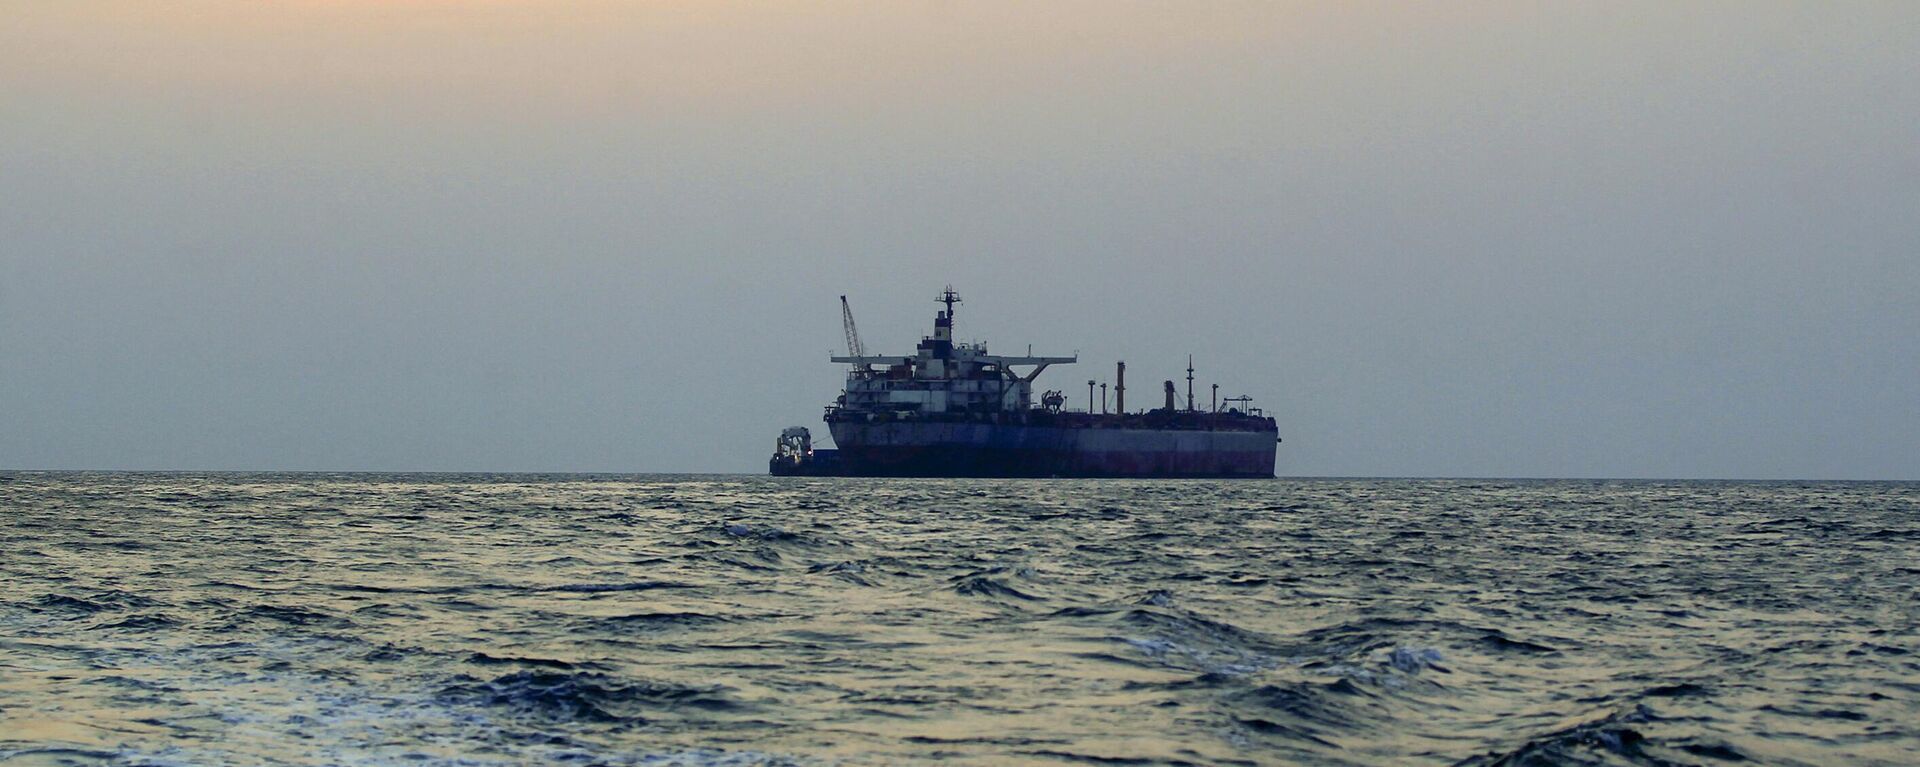 بحرية الحرس الثوري تحتجز سفينة وقود جديدة في الخليج العربي